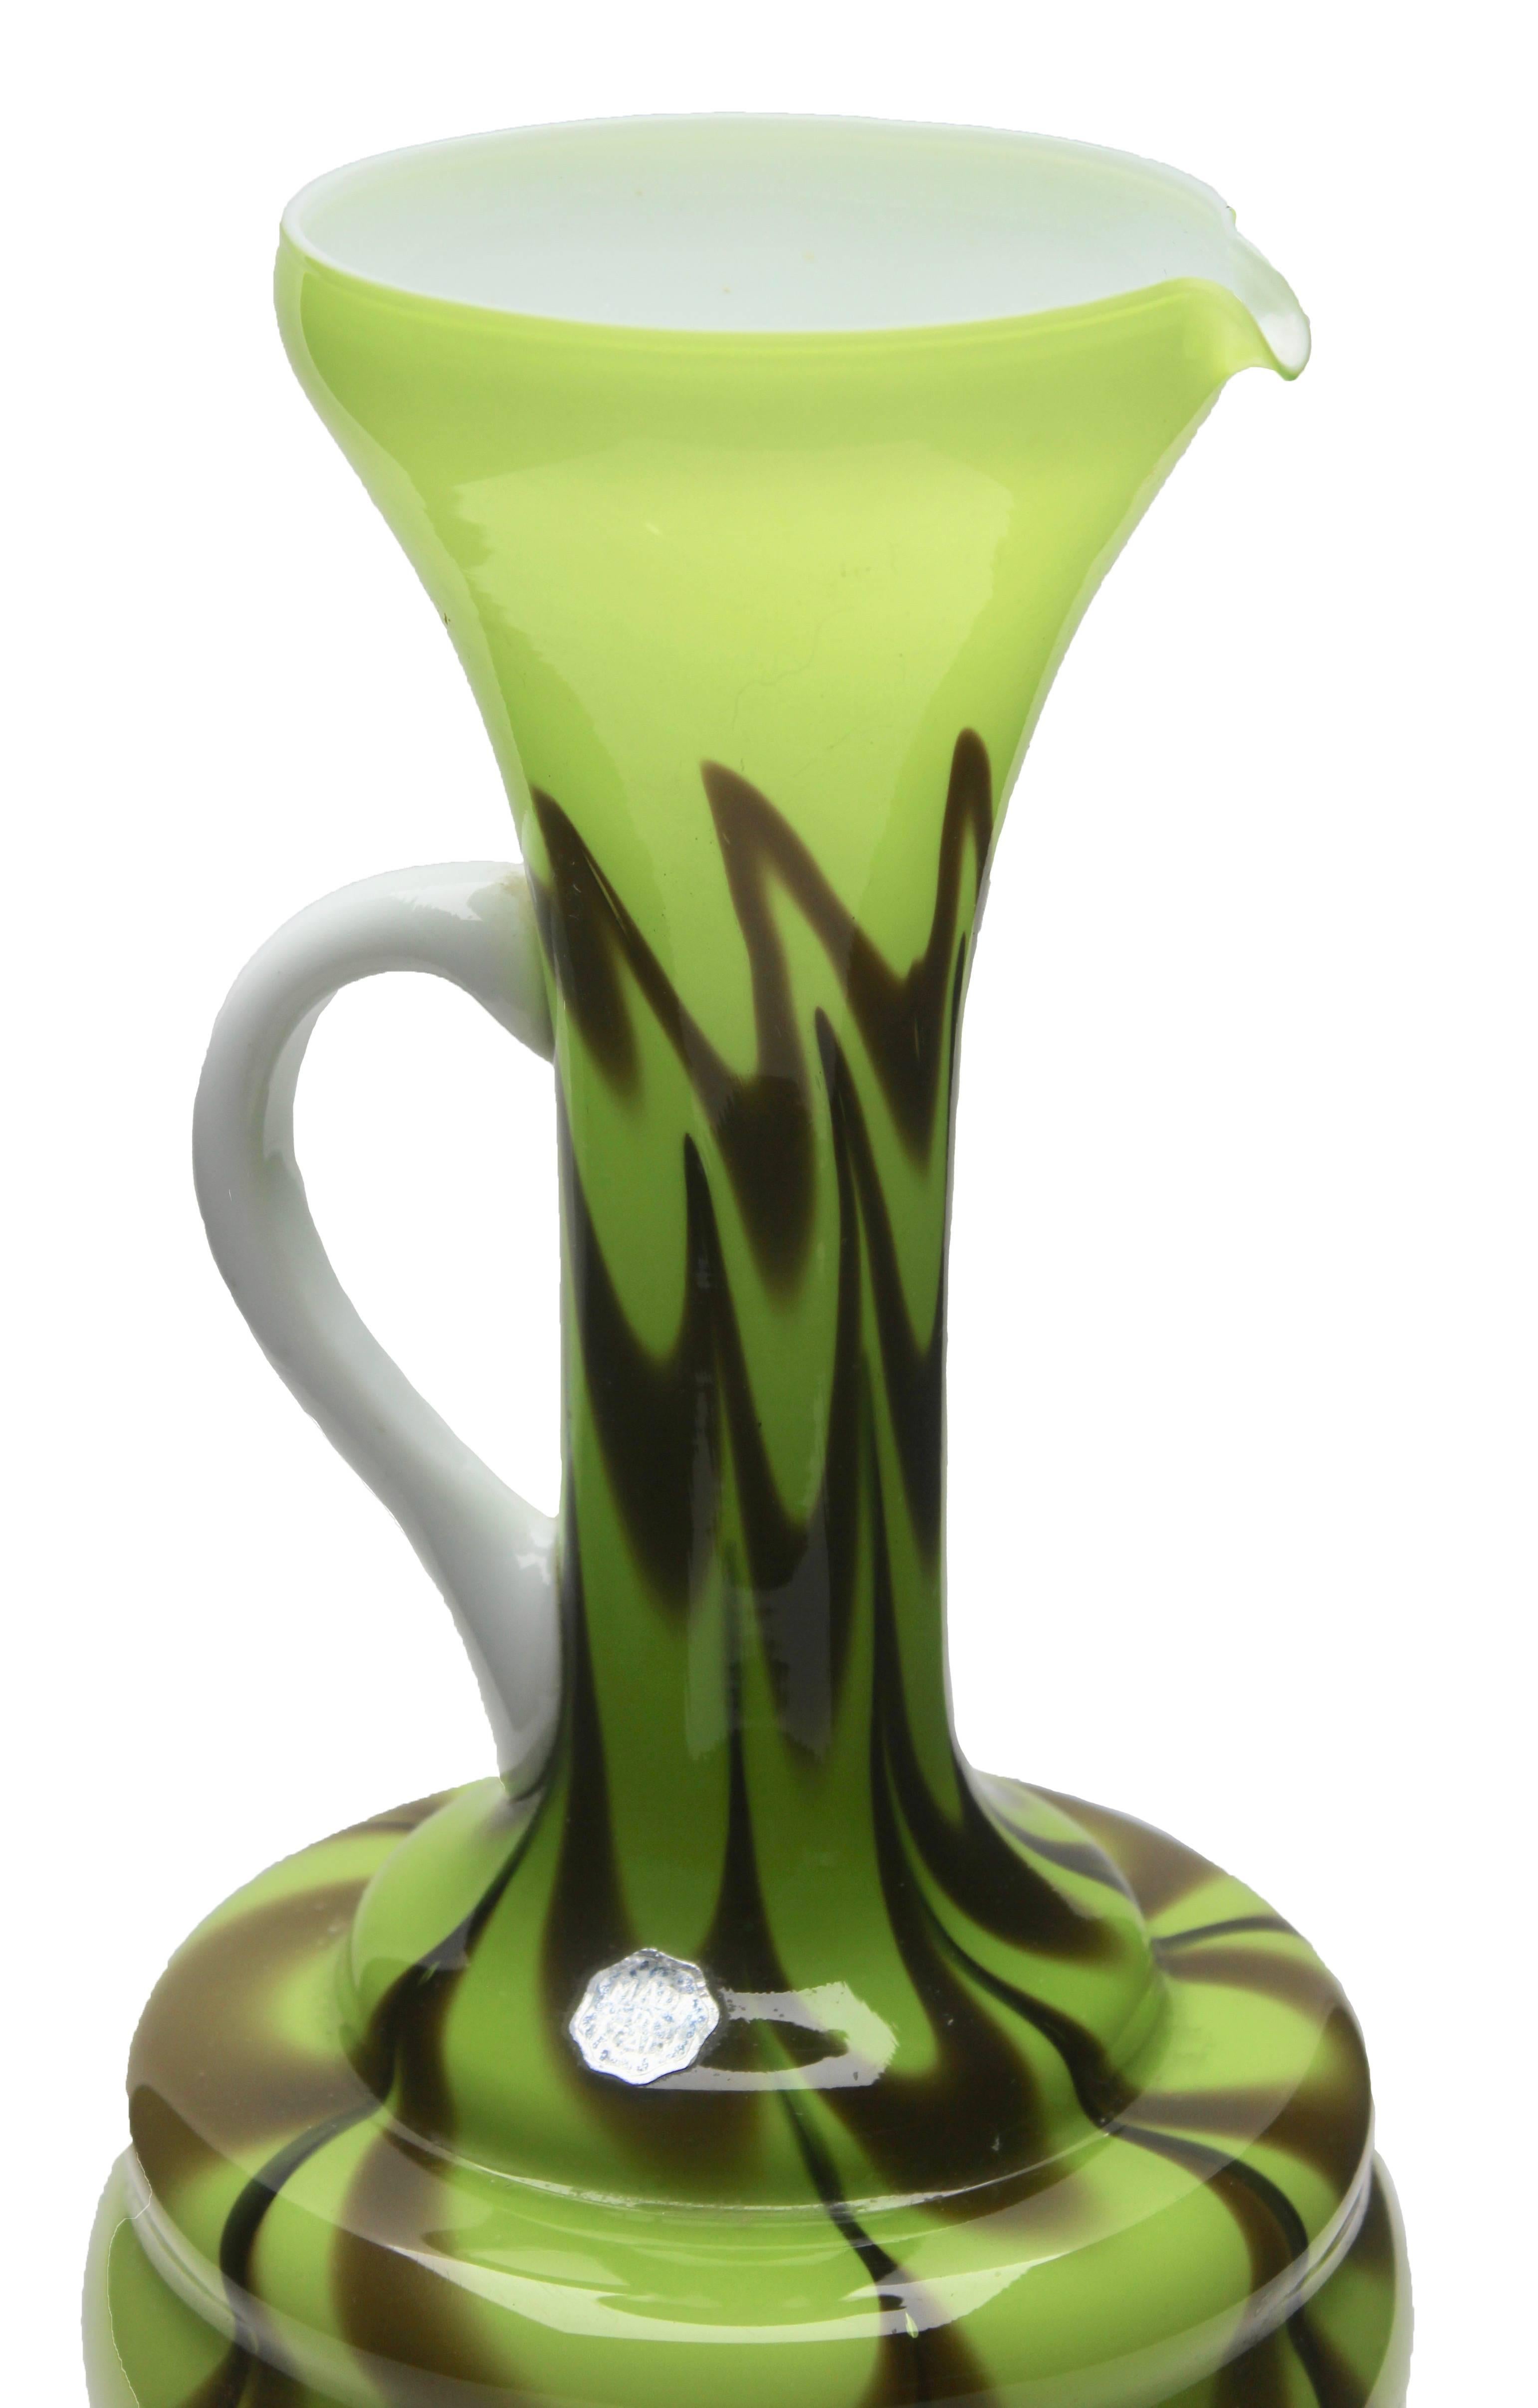 Pichet en verre d'art italien Opaline di Florence (Empoli) opalescent vert et brun avec étiquette d'usine précoce le datant de la fin des années 1950 ou du début des années 1960. 

Belle opale soufflée à la main (verte, brune) et poignée blanche